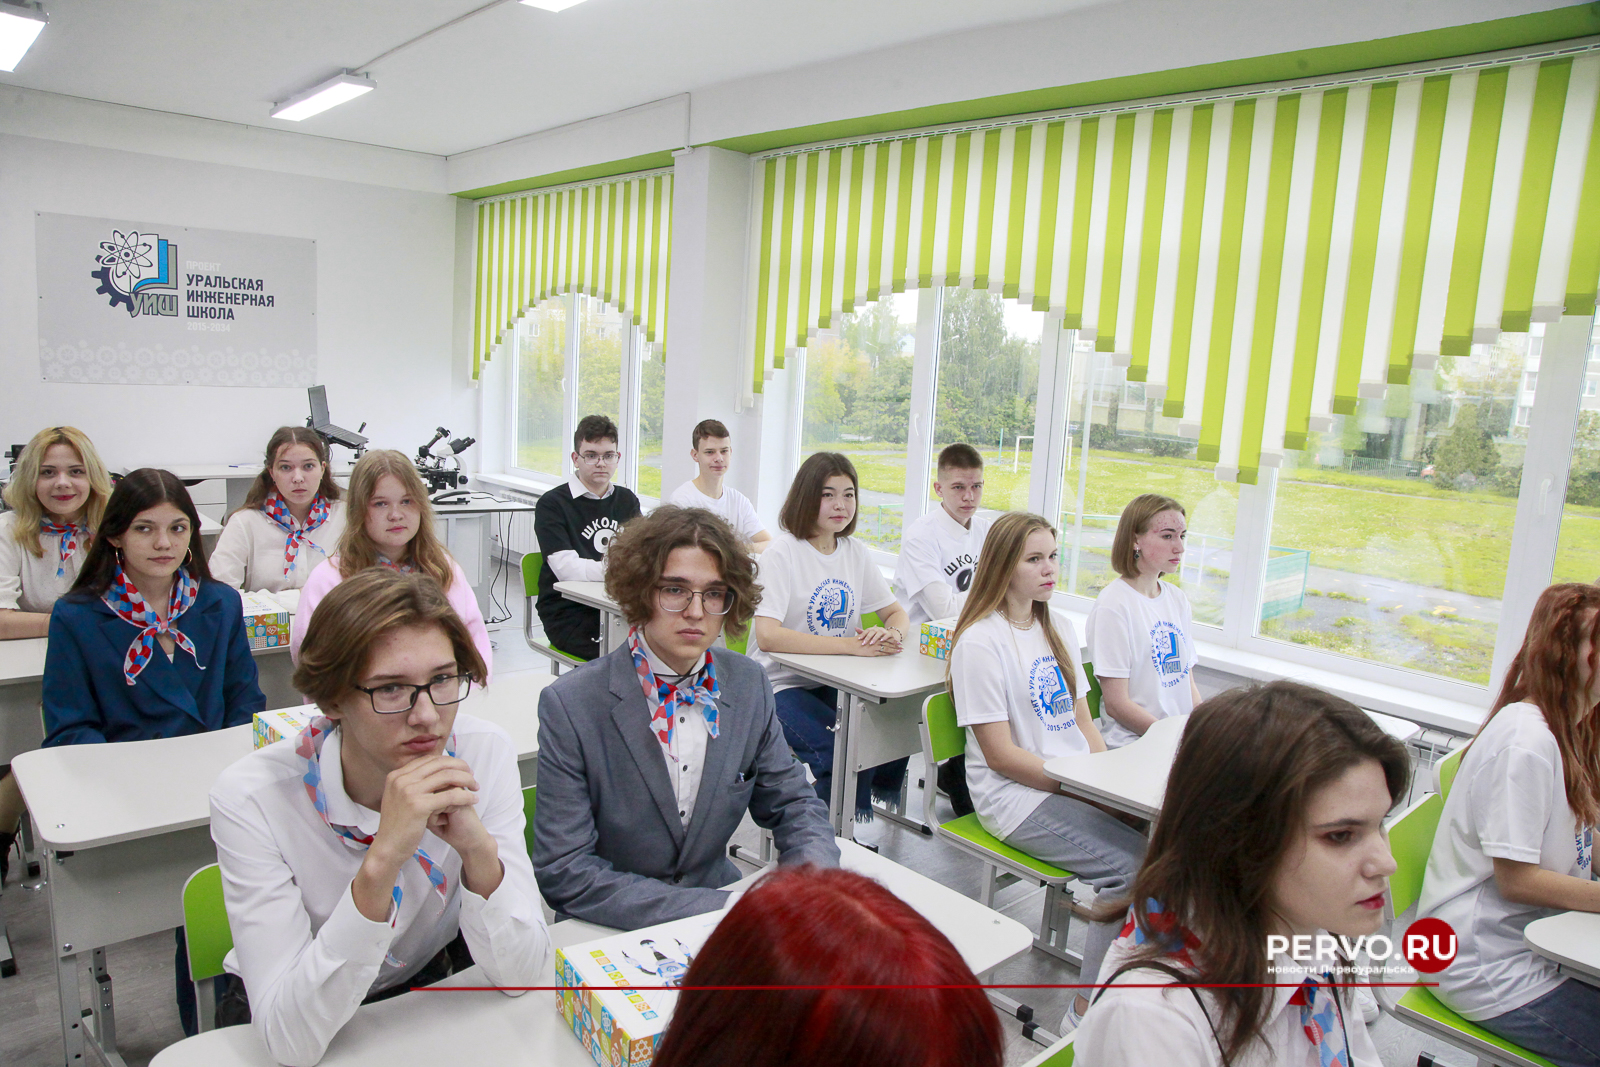 Сегодня в Первоуральске открыли учебный класс биологии в рамках проекта «Уральская инженерная школа»